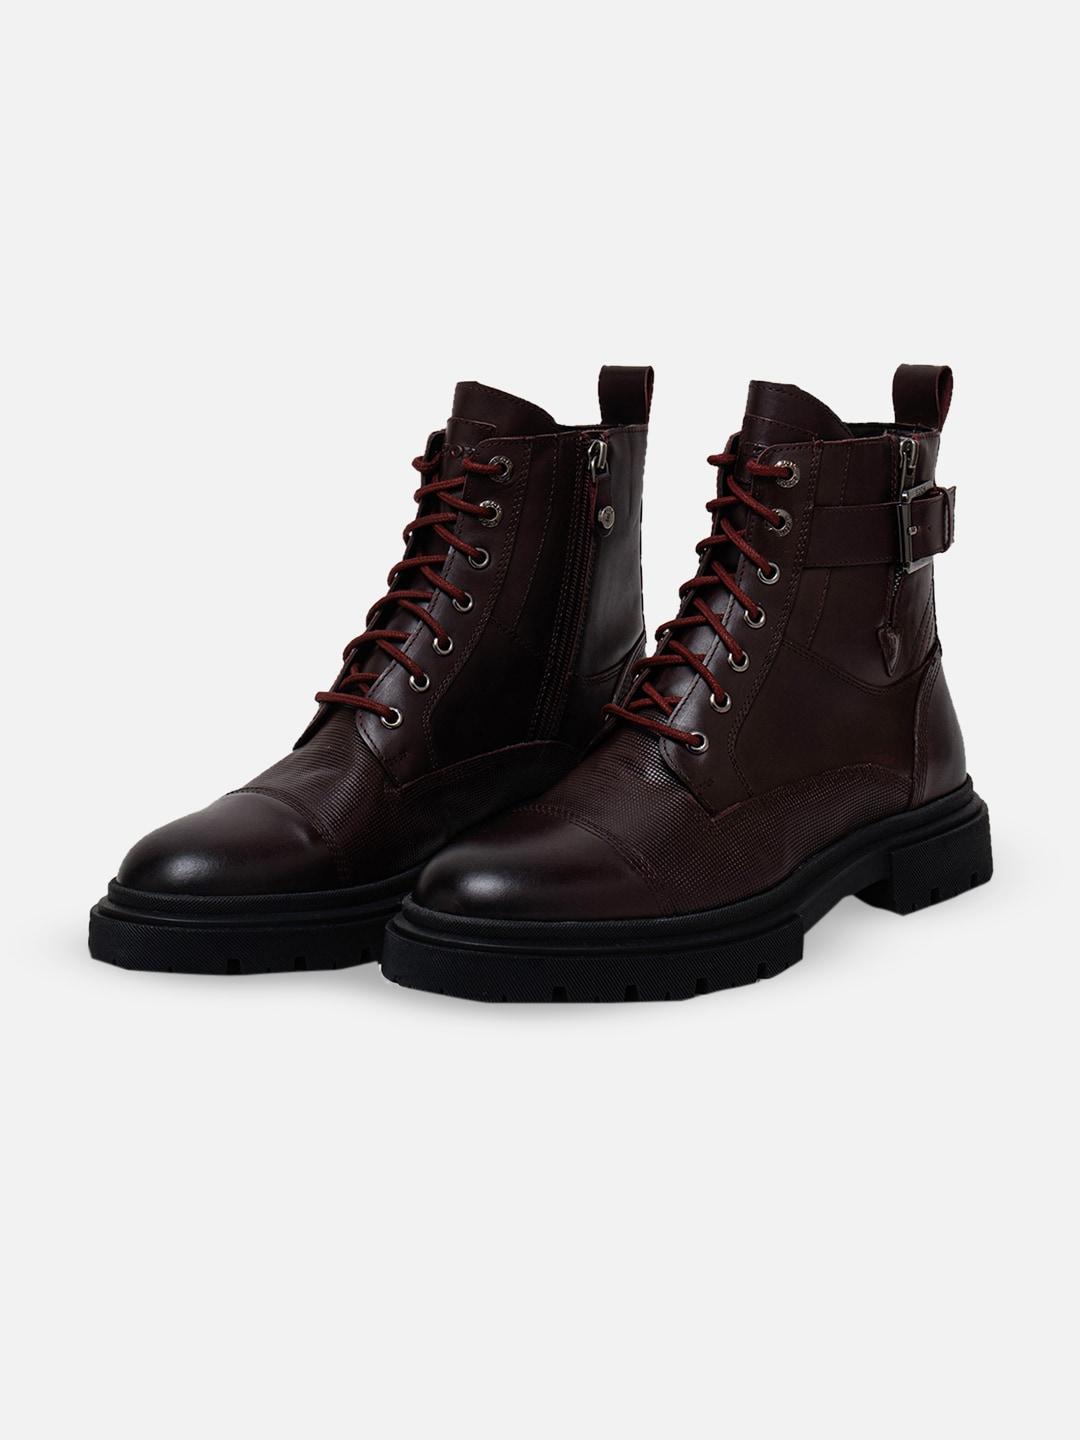 ezok-men-buckle-detail-leather-mid-top-regular-boots